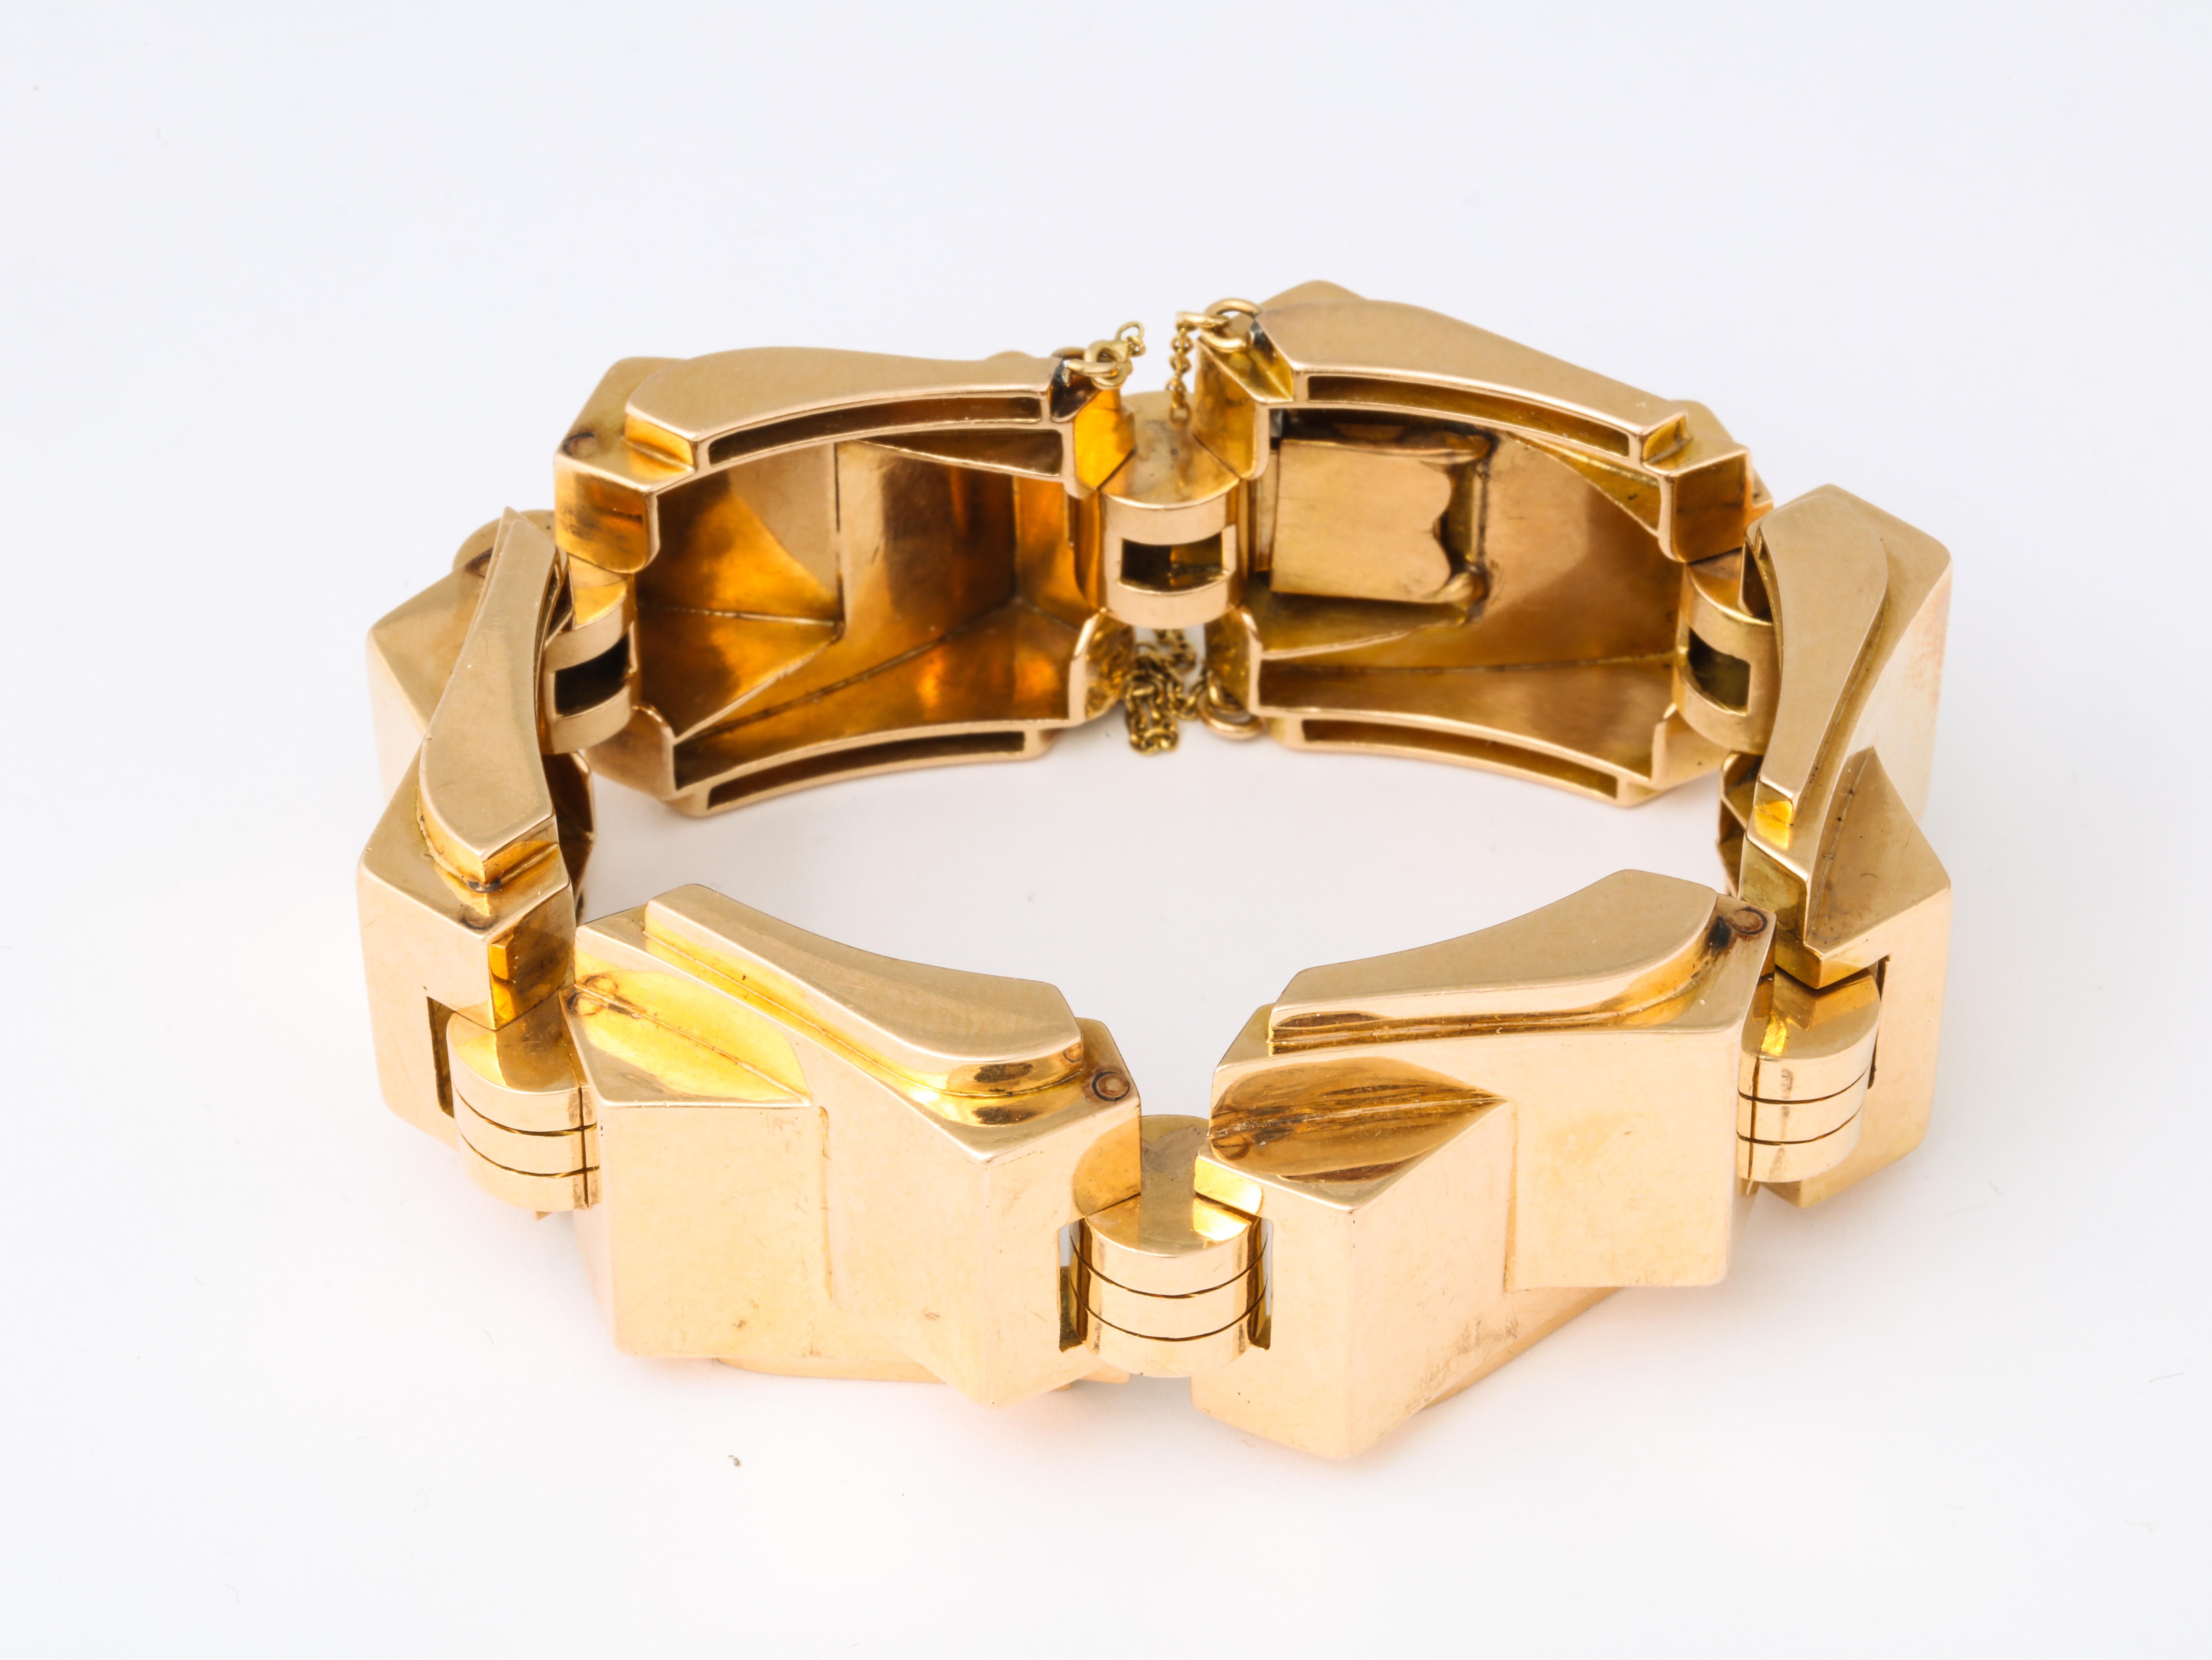 A fabulous retro tank bracelet in 18 karat gold